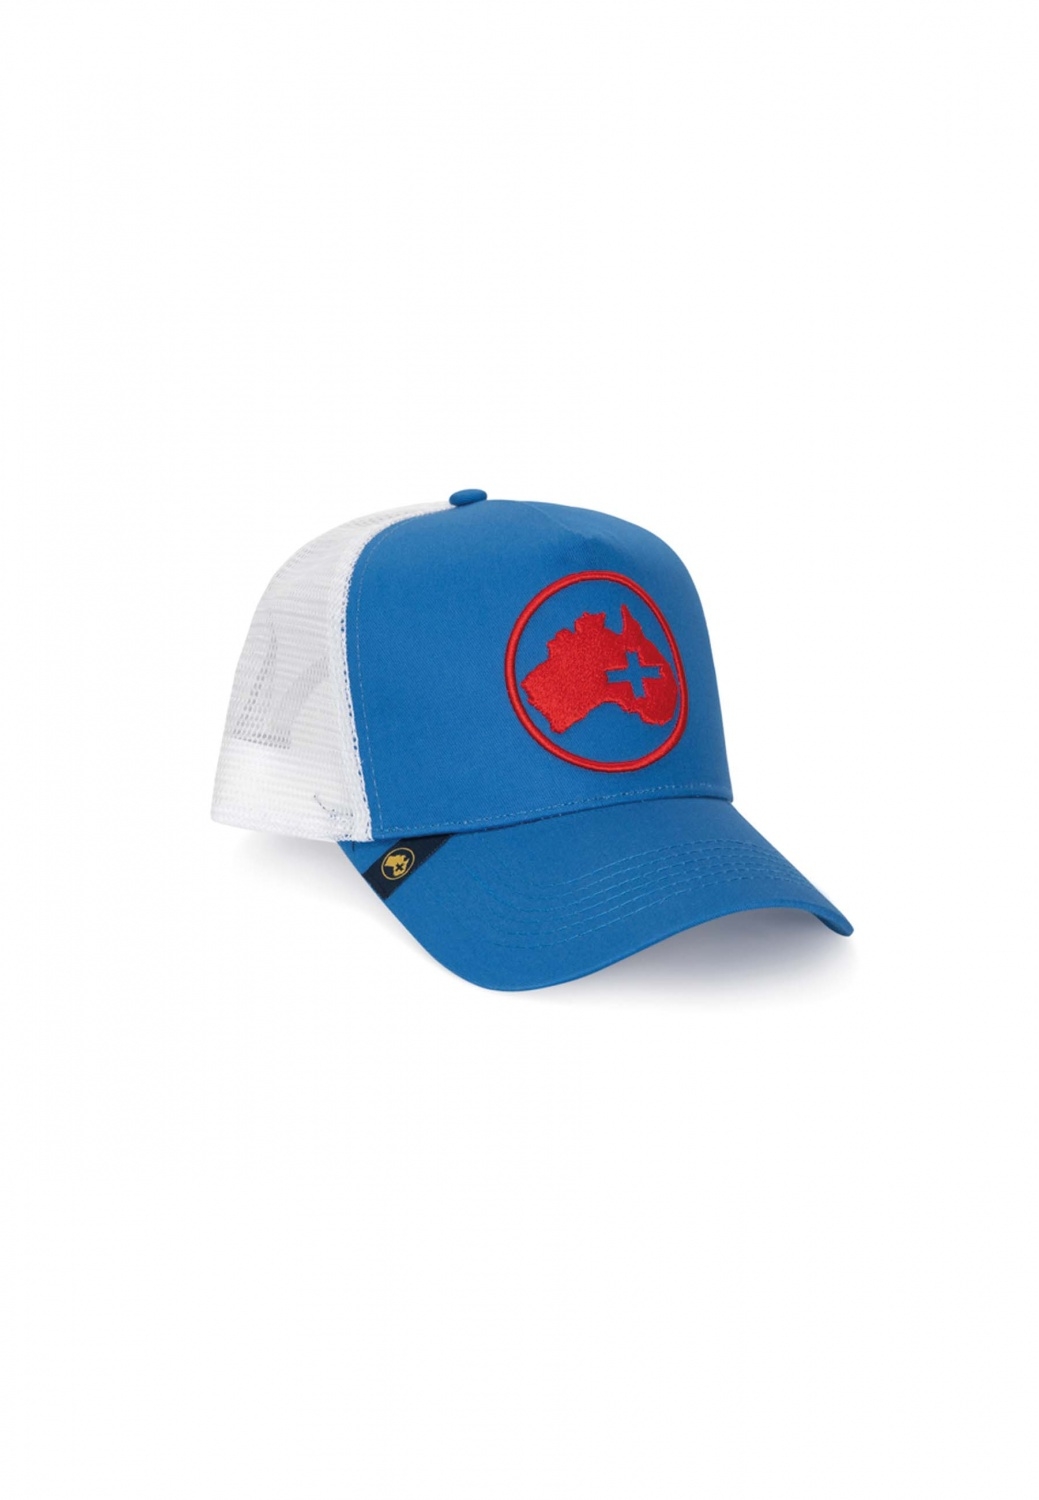 BLUE AND RED CAP Altonadock